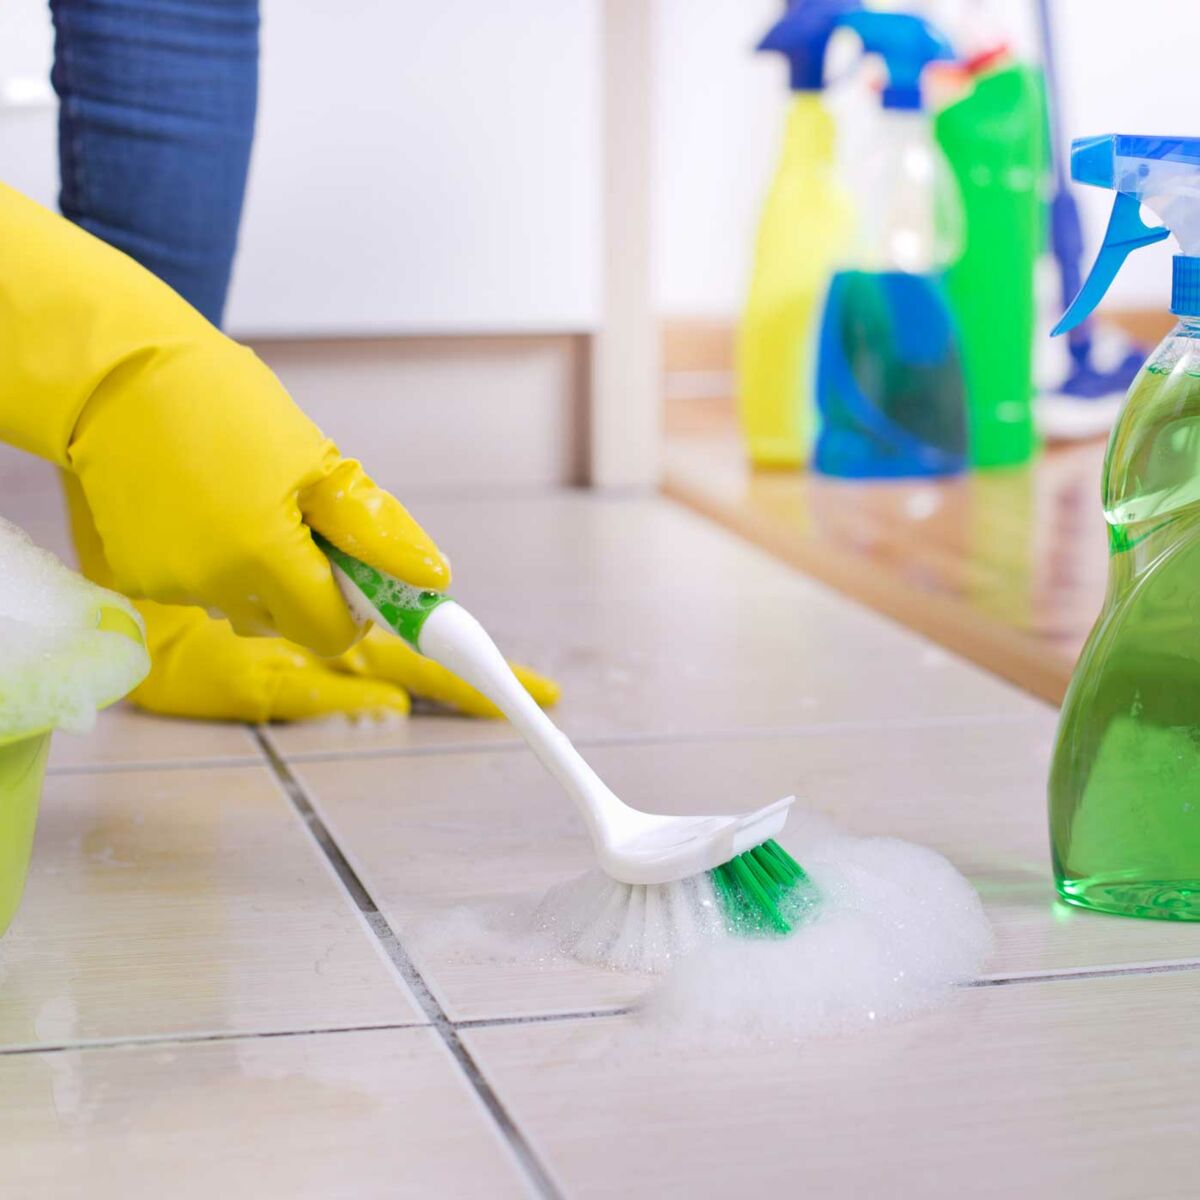 Comment nettoyer les joints de carrelage? - Nettoyage des surfaces -  nettoyer-la-maison